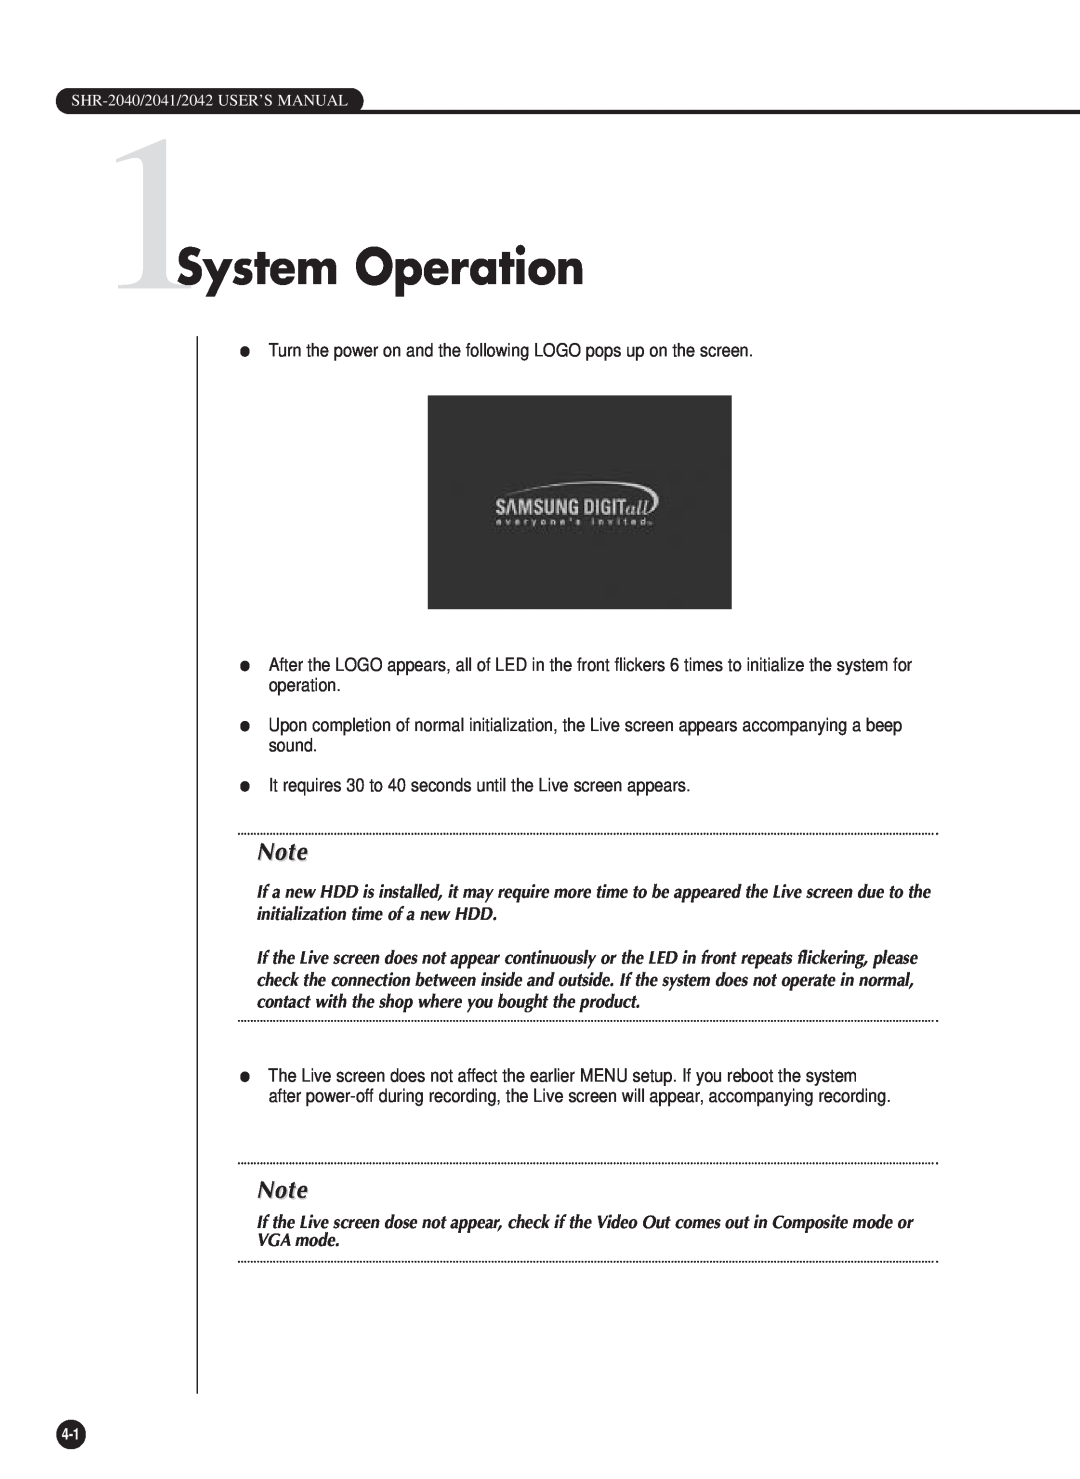 Samsung SHR-2040P/XEC, SHR-2040P/GAR, SHR-2042P, SHR-2040PX manual 1System Operation 